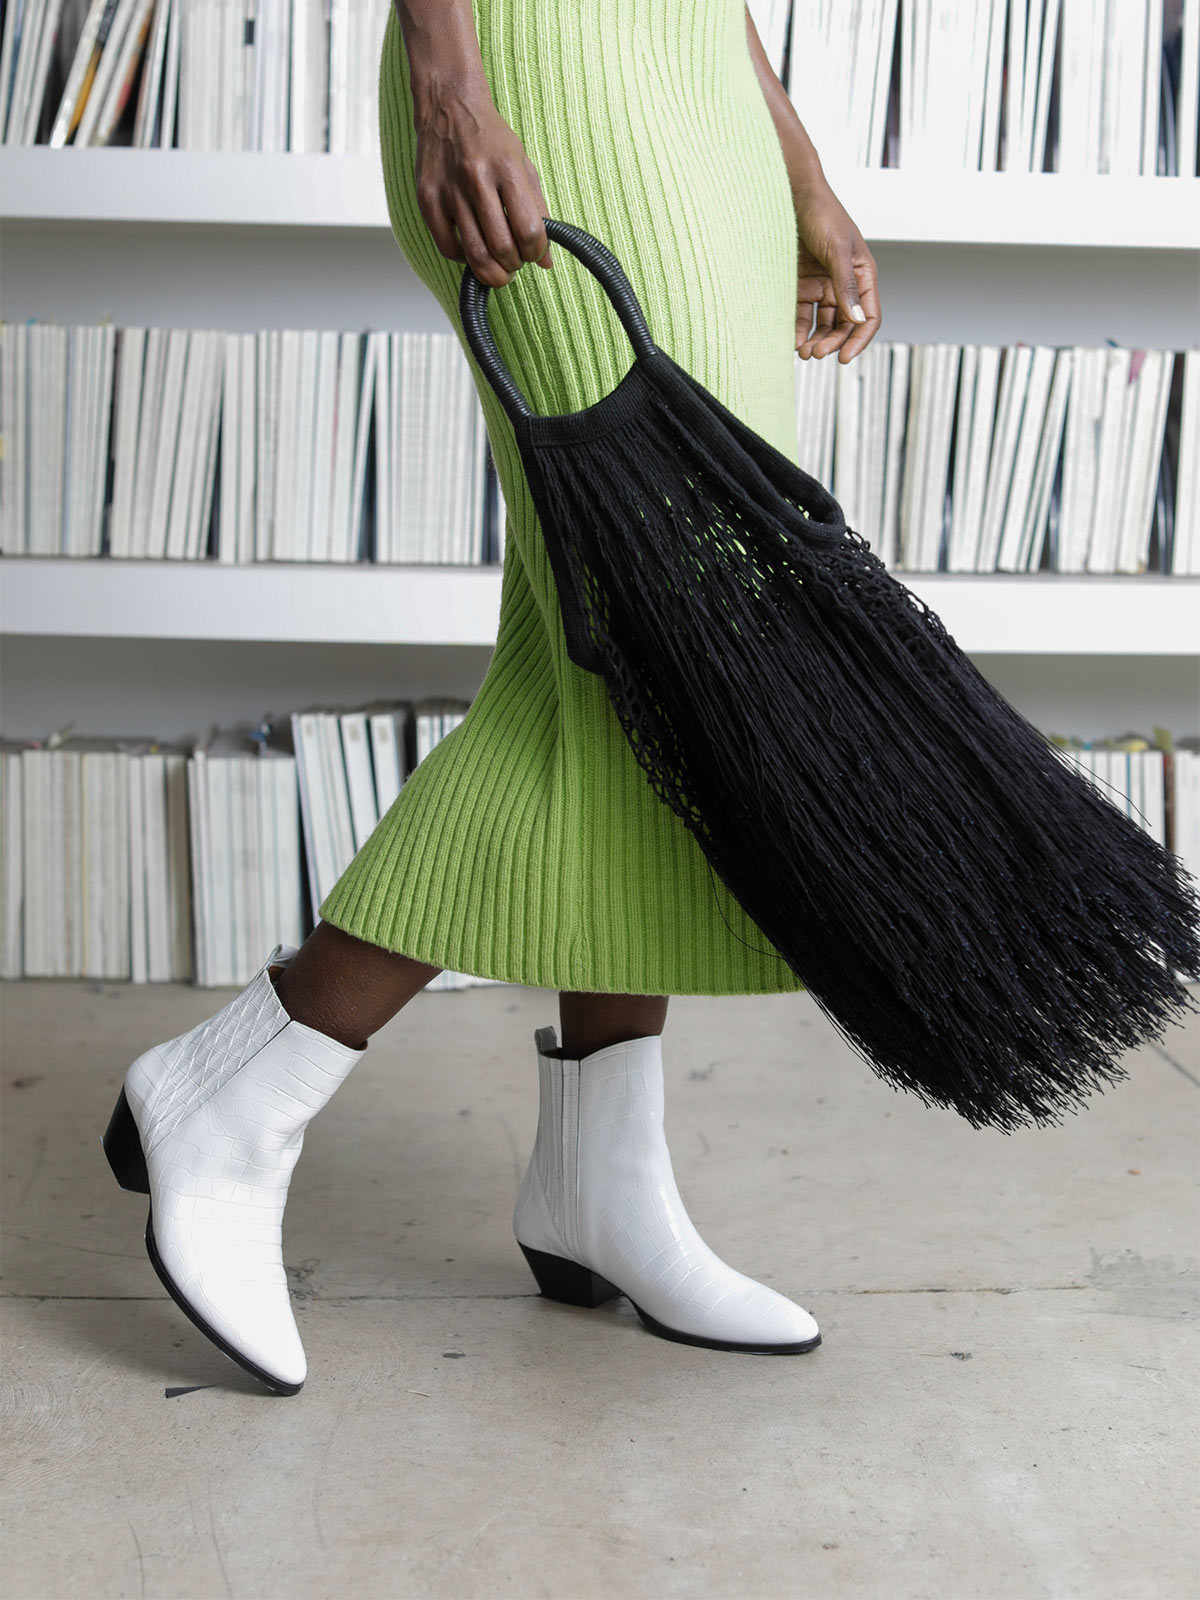 Large Fringe Tote | Black - Fashionkind